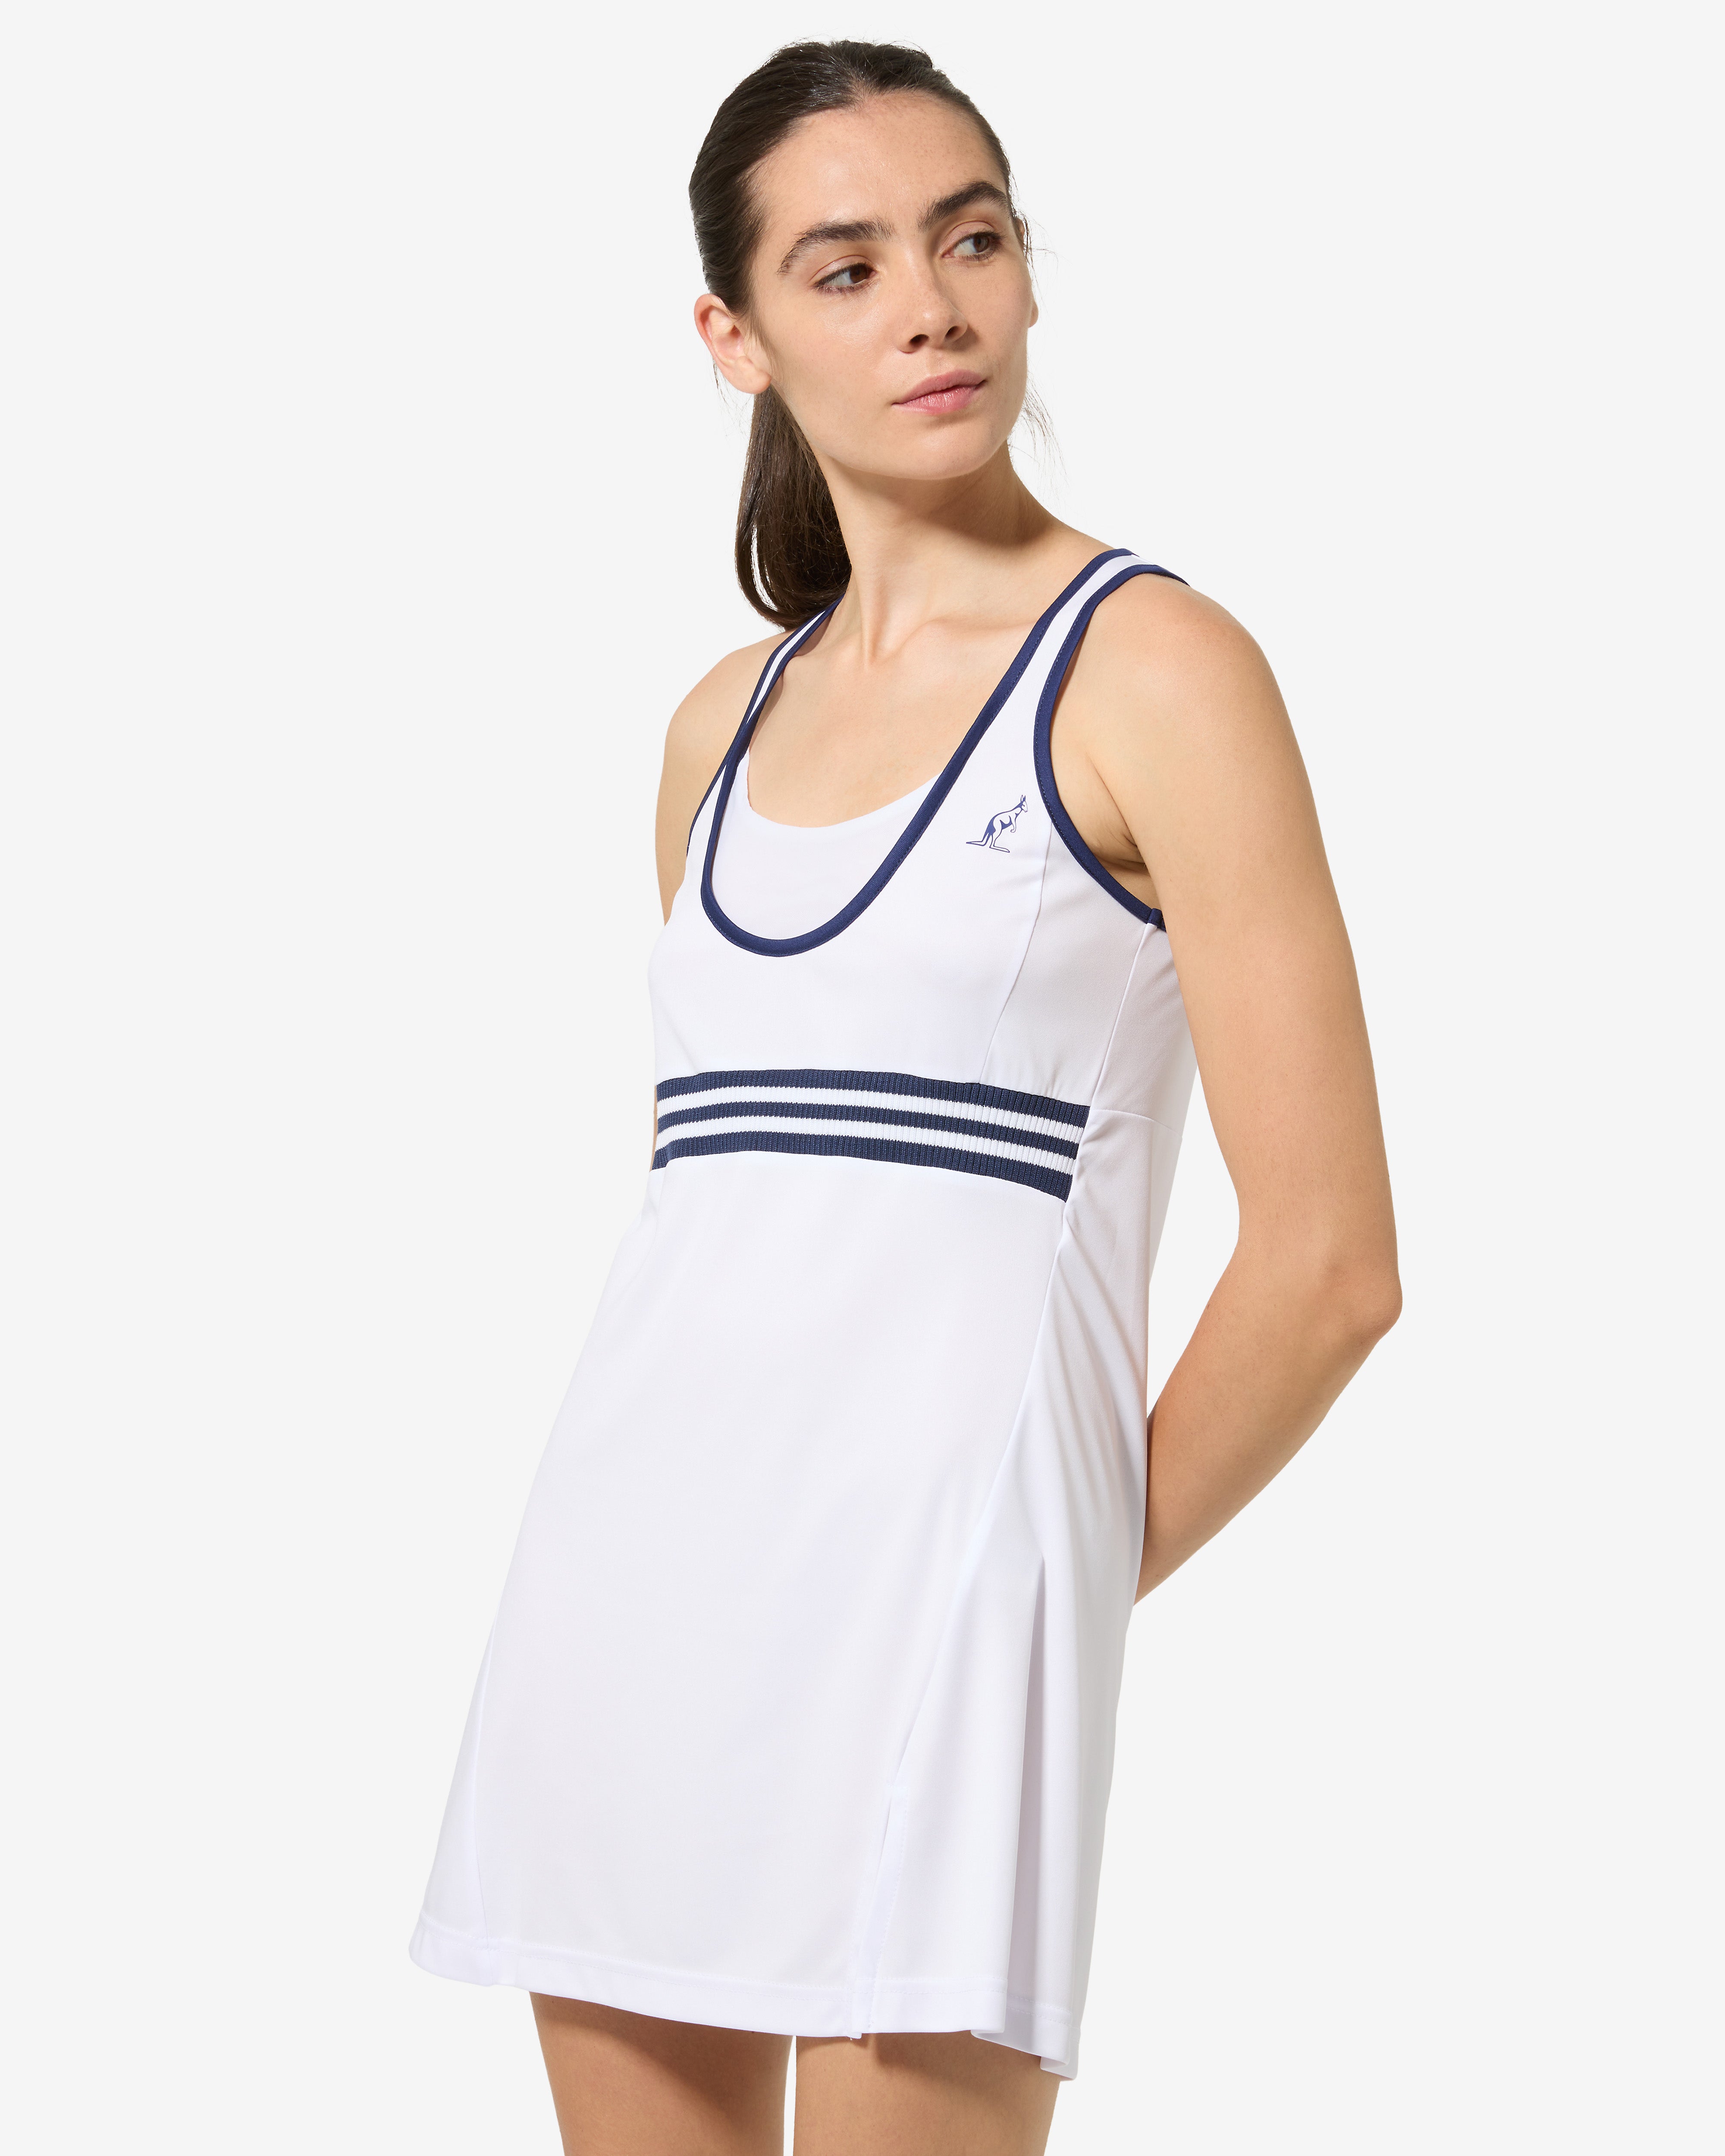 Legend Dress: Australian Tennis